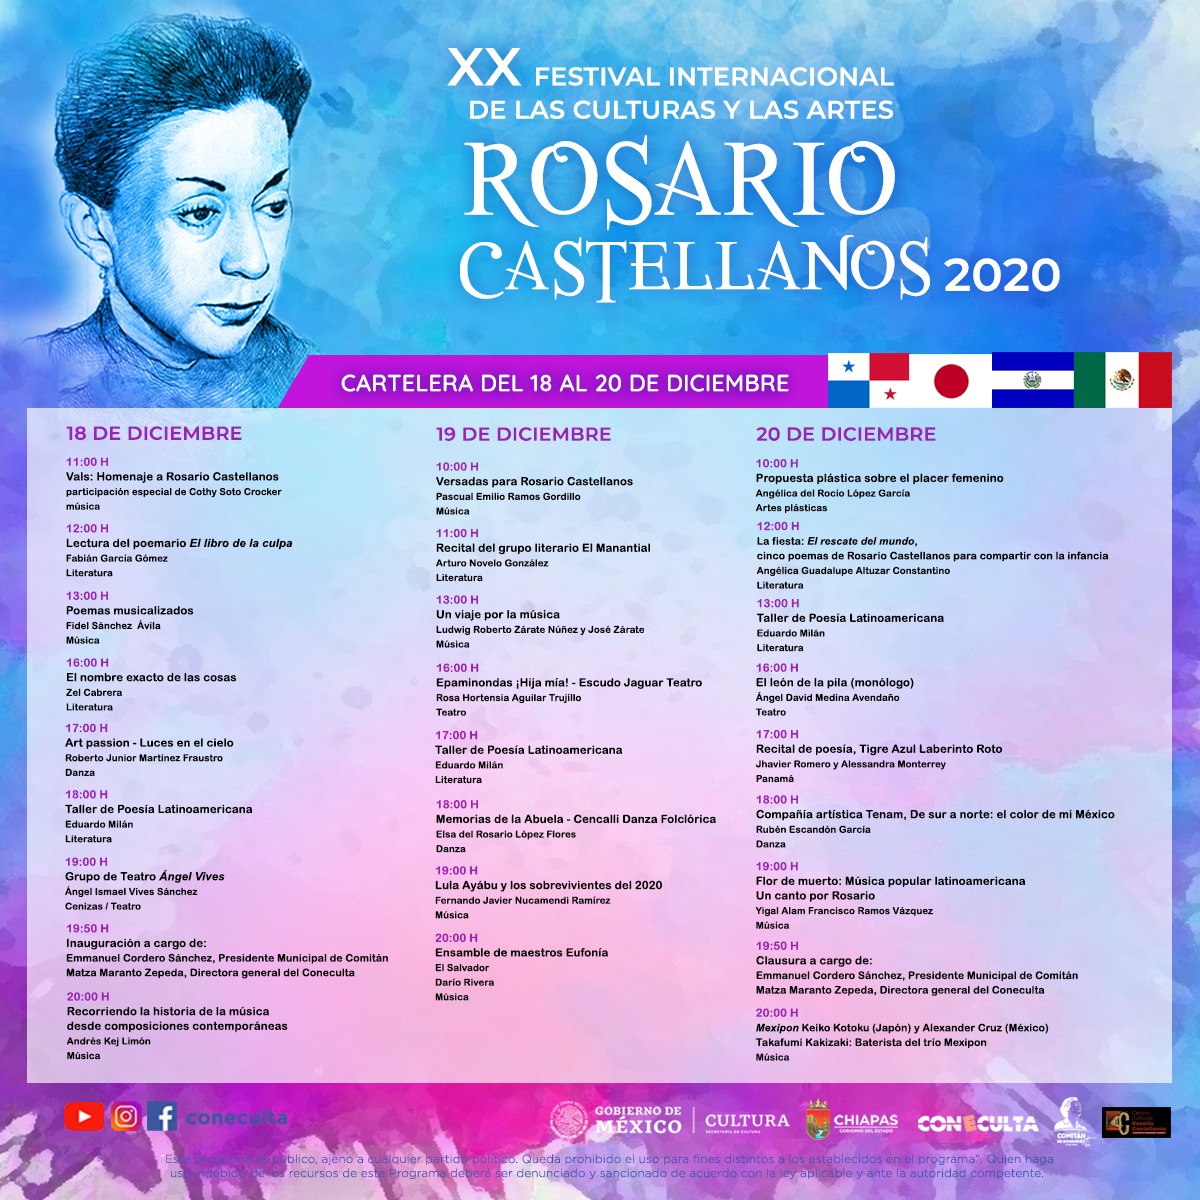 XX Festival Internacional de las Culturas y las Artes Rosario Castellanos 2020